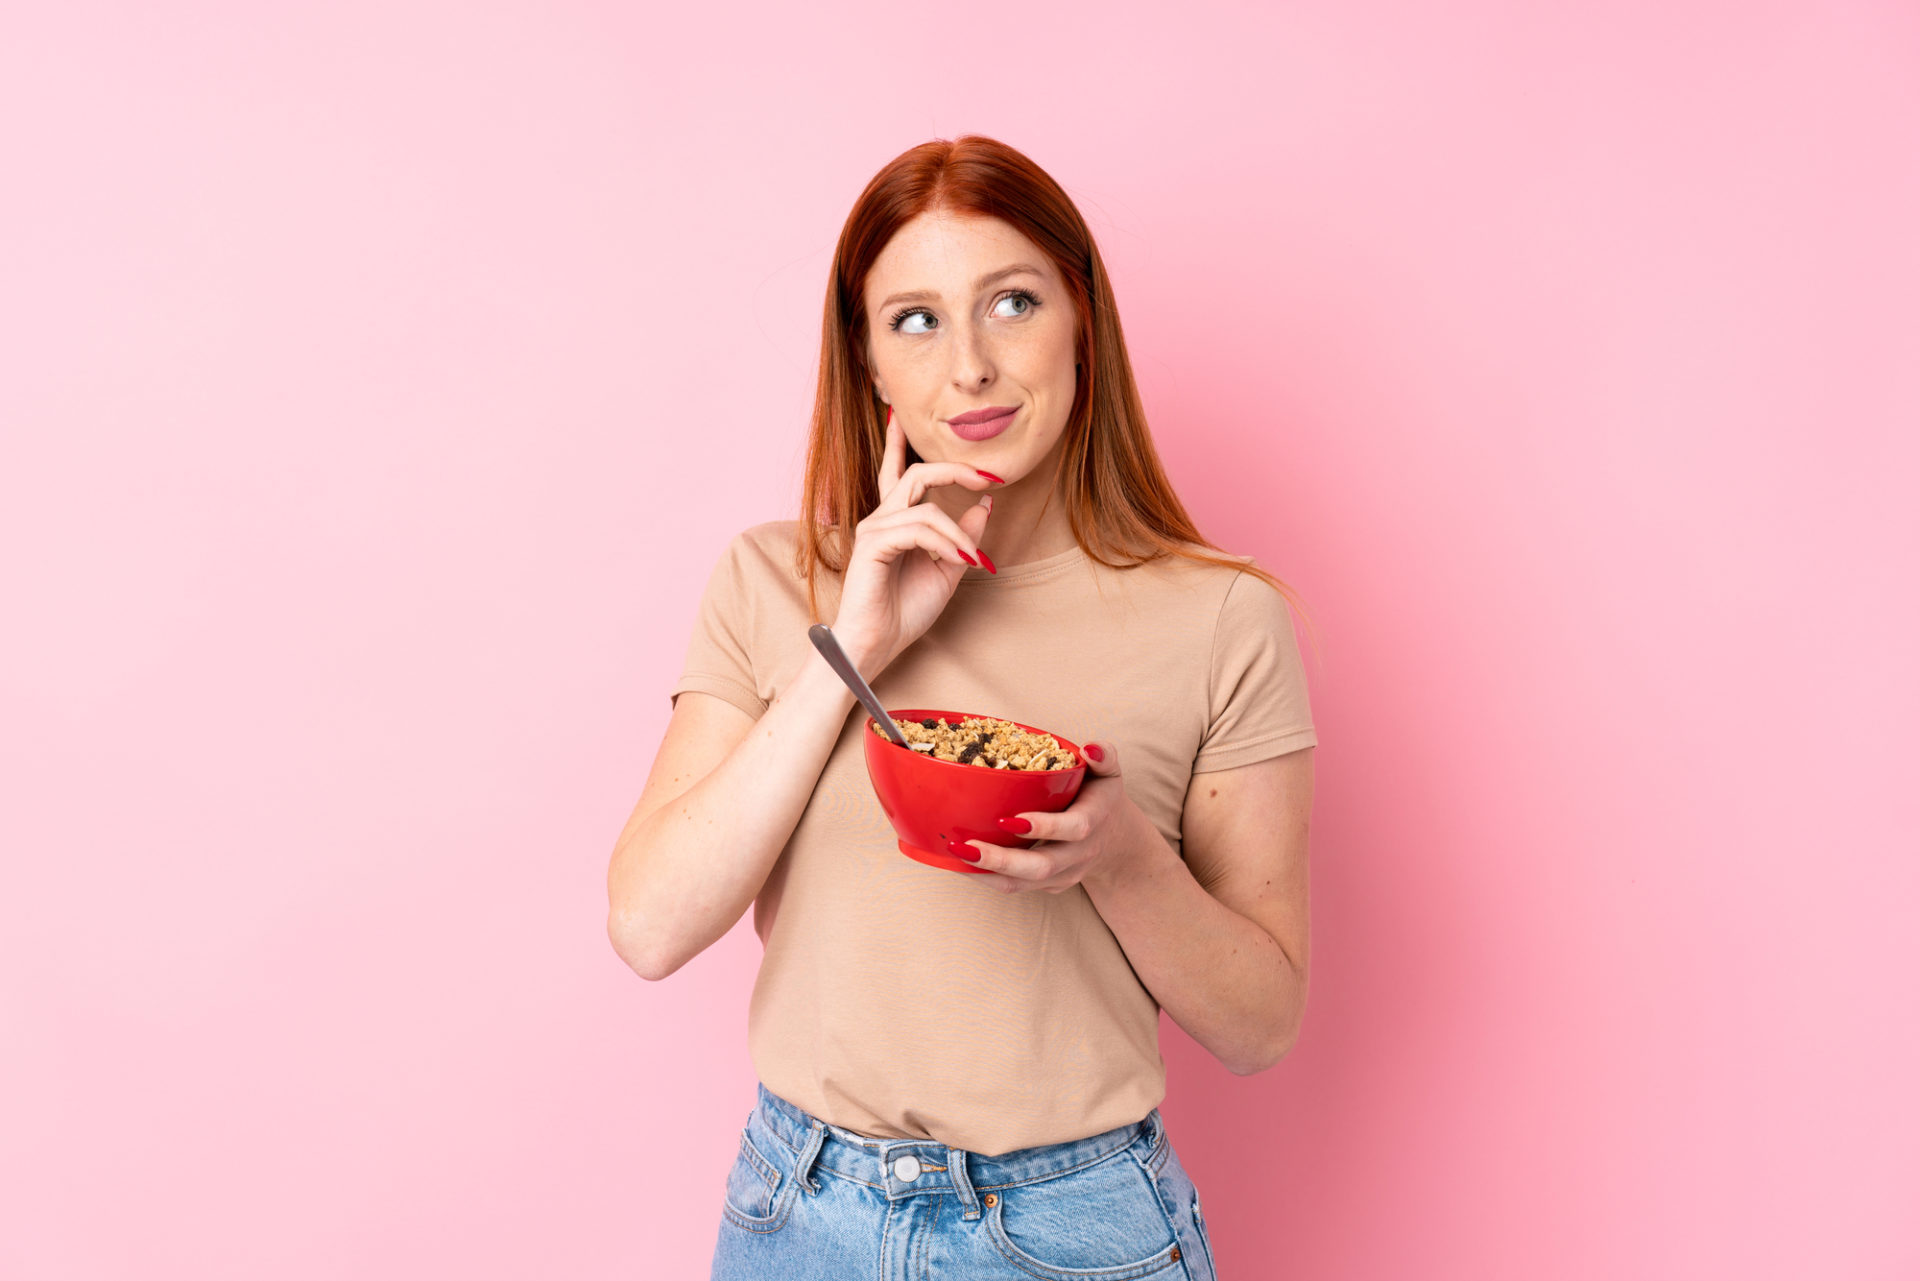 Giovane donna dai capelli rossi su sfondo rosa isolato che tiene in mano una ciotola di cereali e pensa